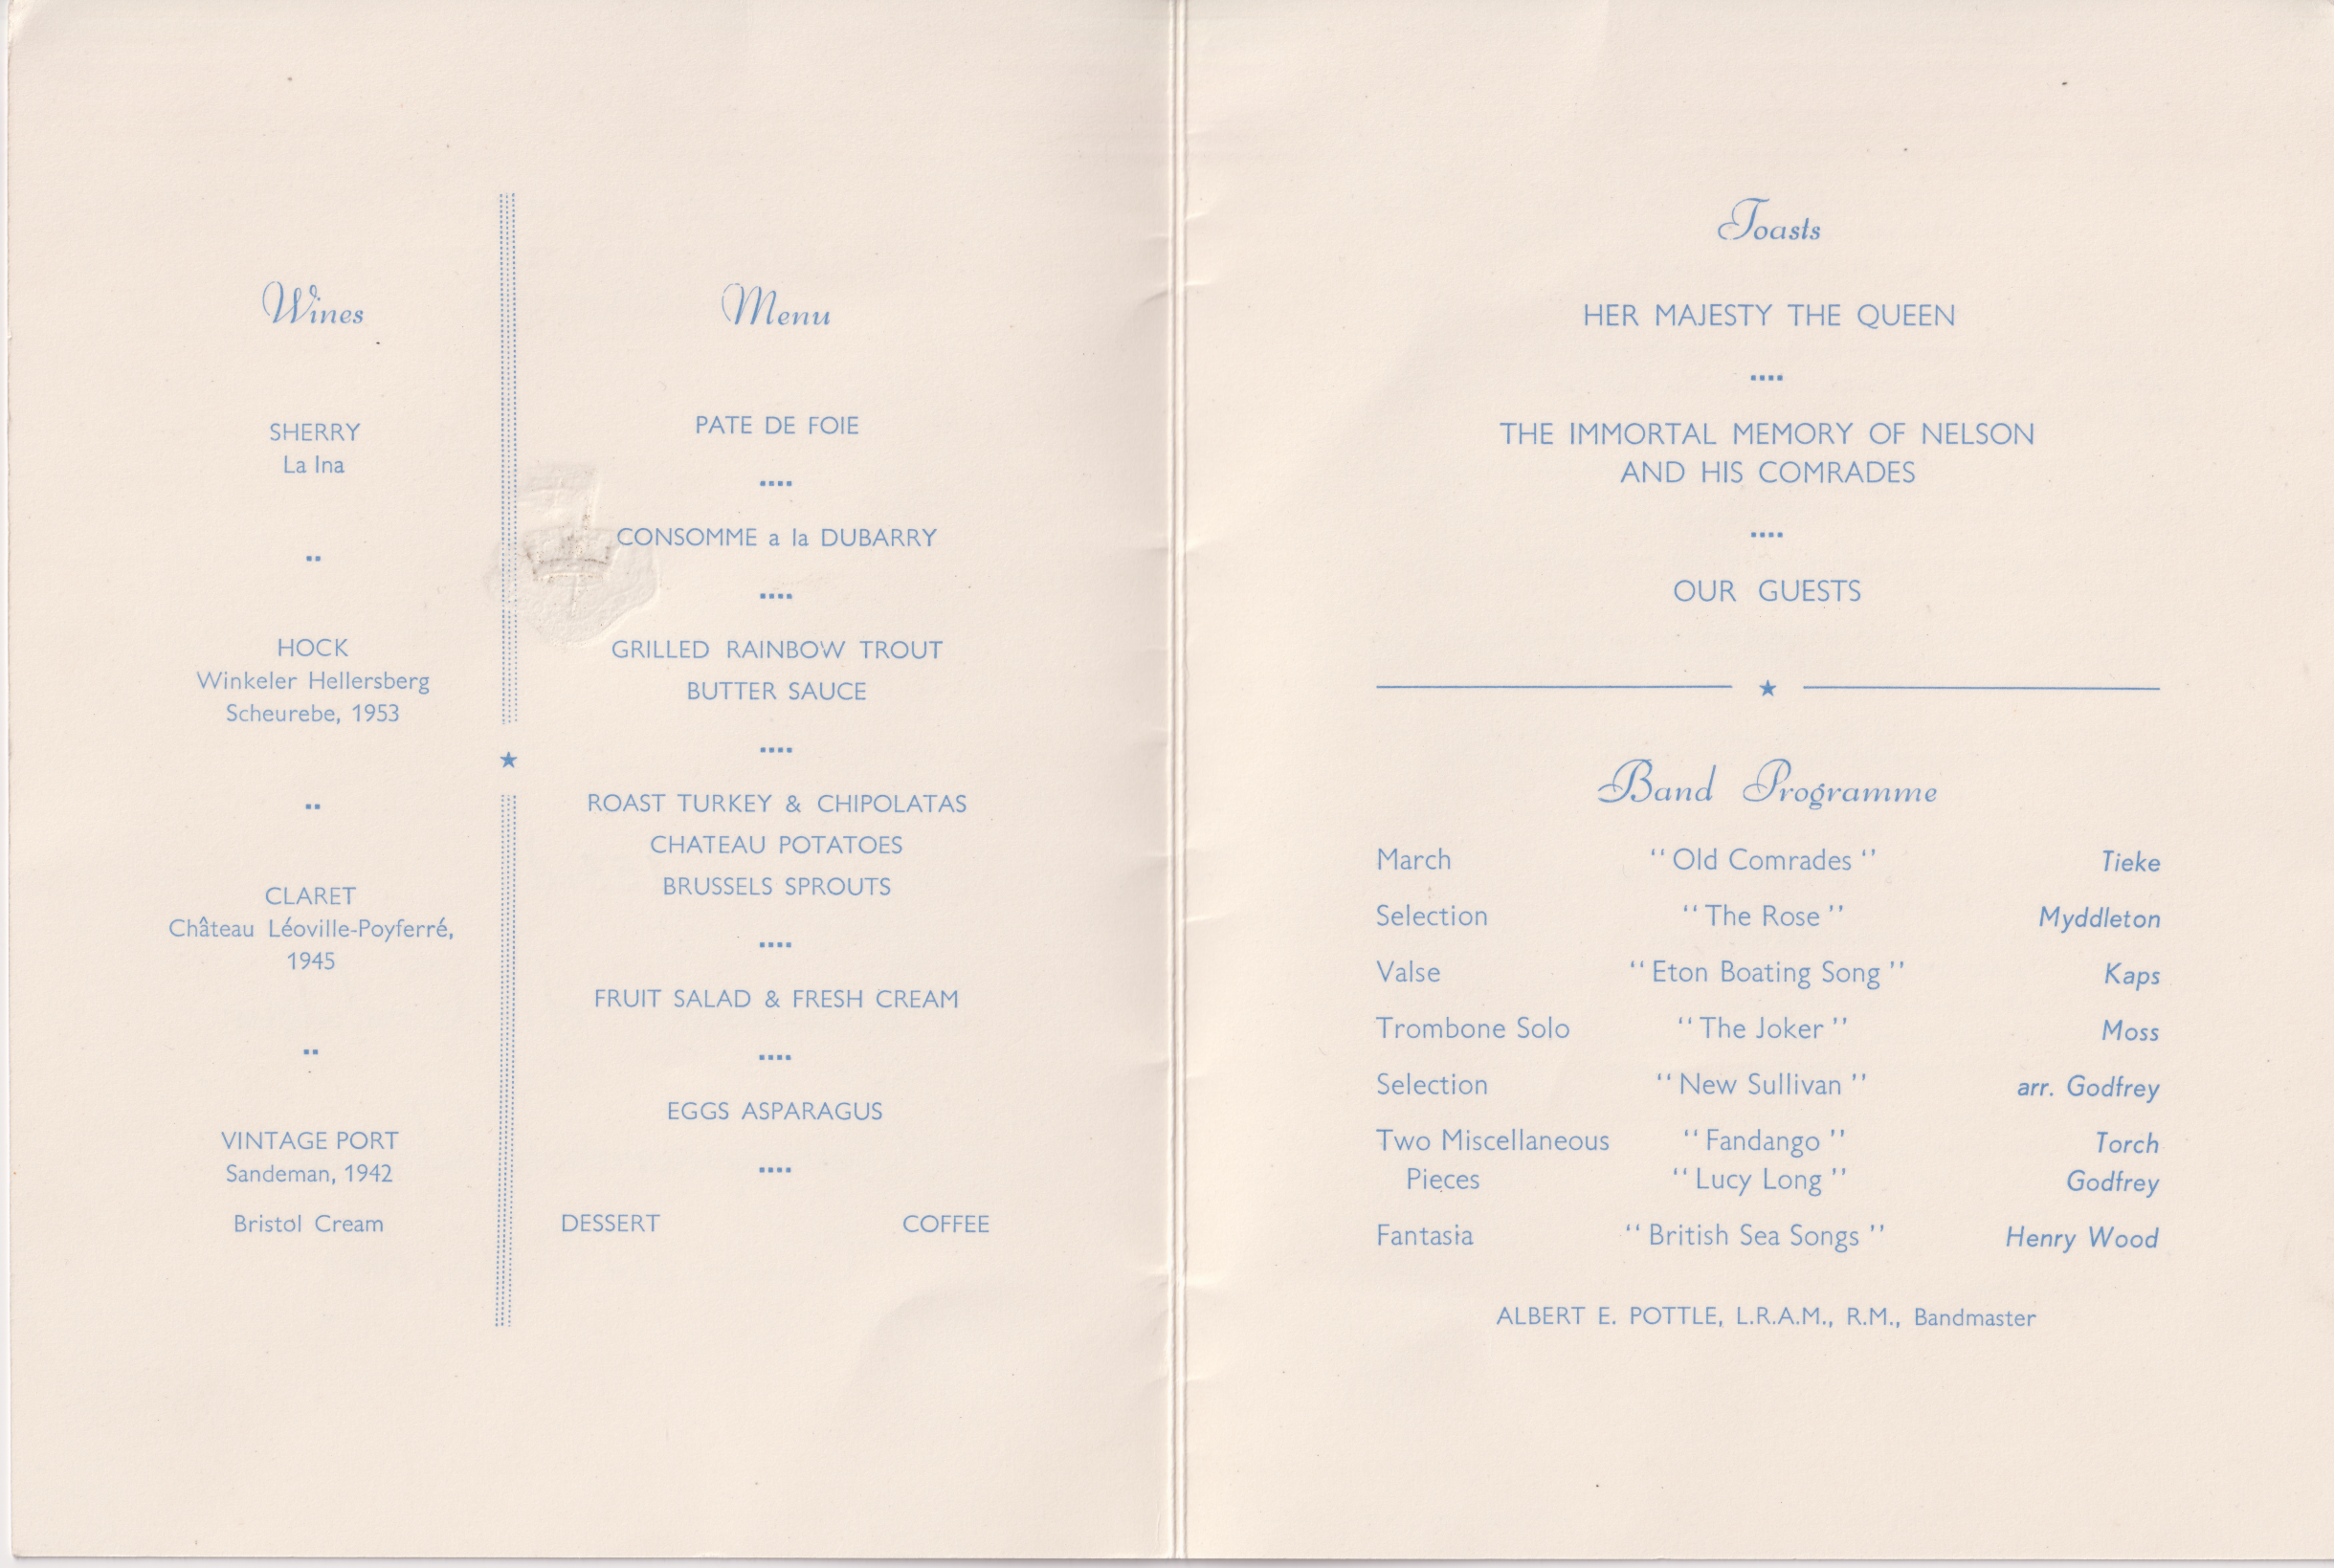 Trafalgar Night Dinner menu from 1958. Credit NMRN